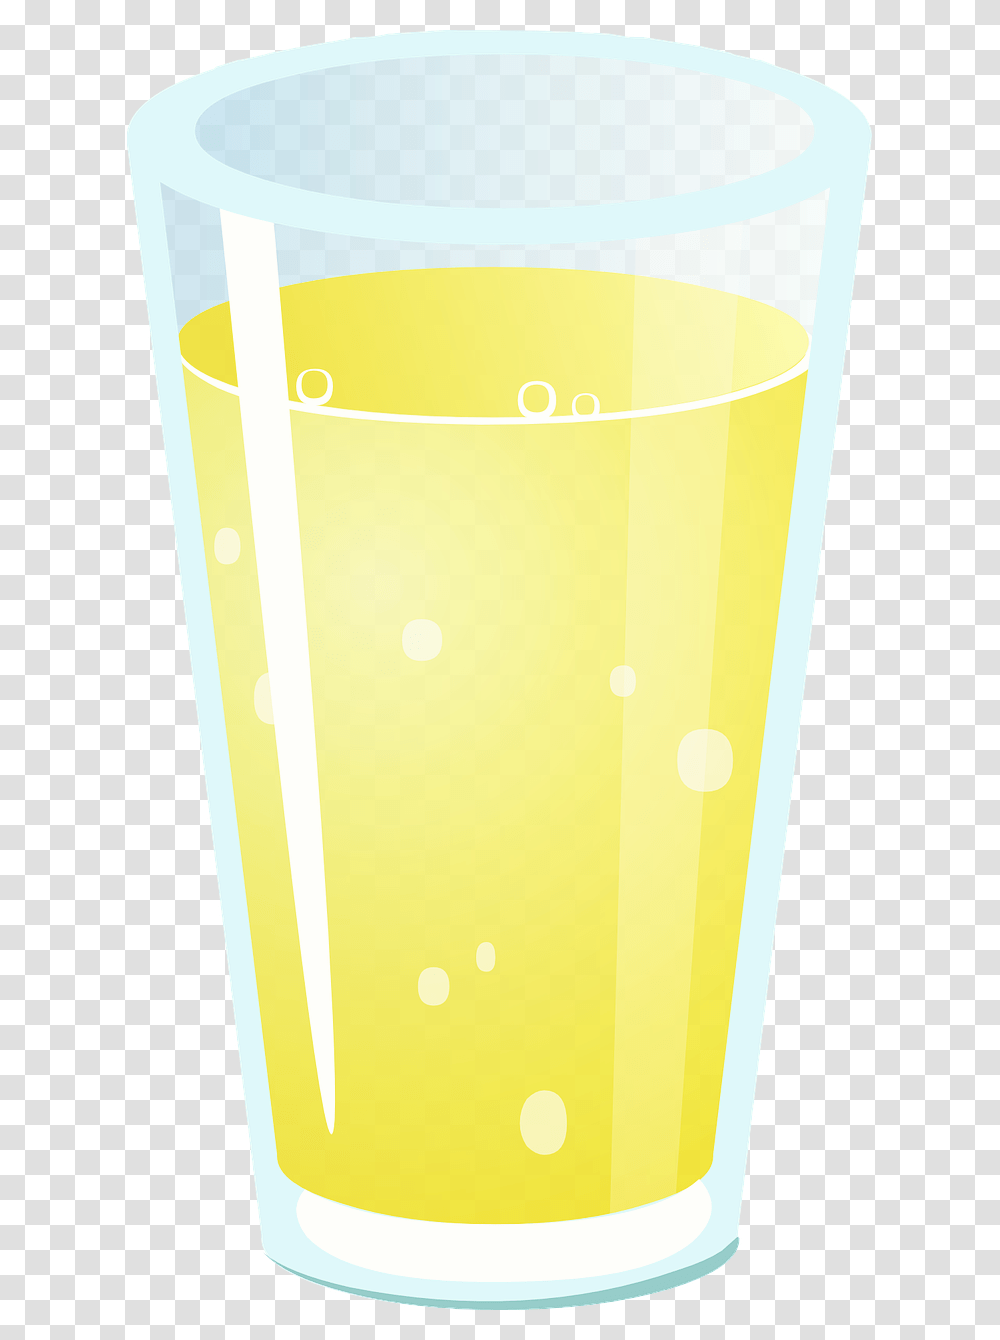 Imagen De Un Vaso Con Forma De Tronco De Cono Objetos En Forma De Cilindro, Glass, Beer, Alcohol, Beverage Transparent Png